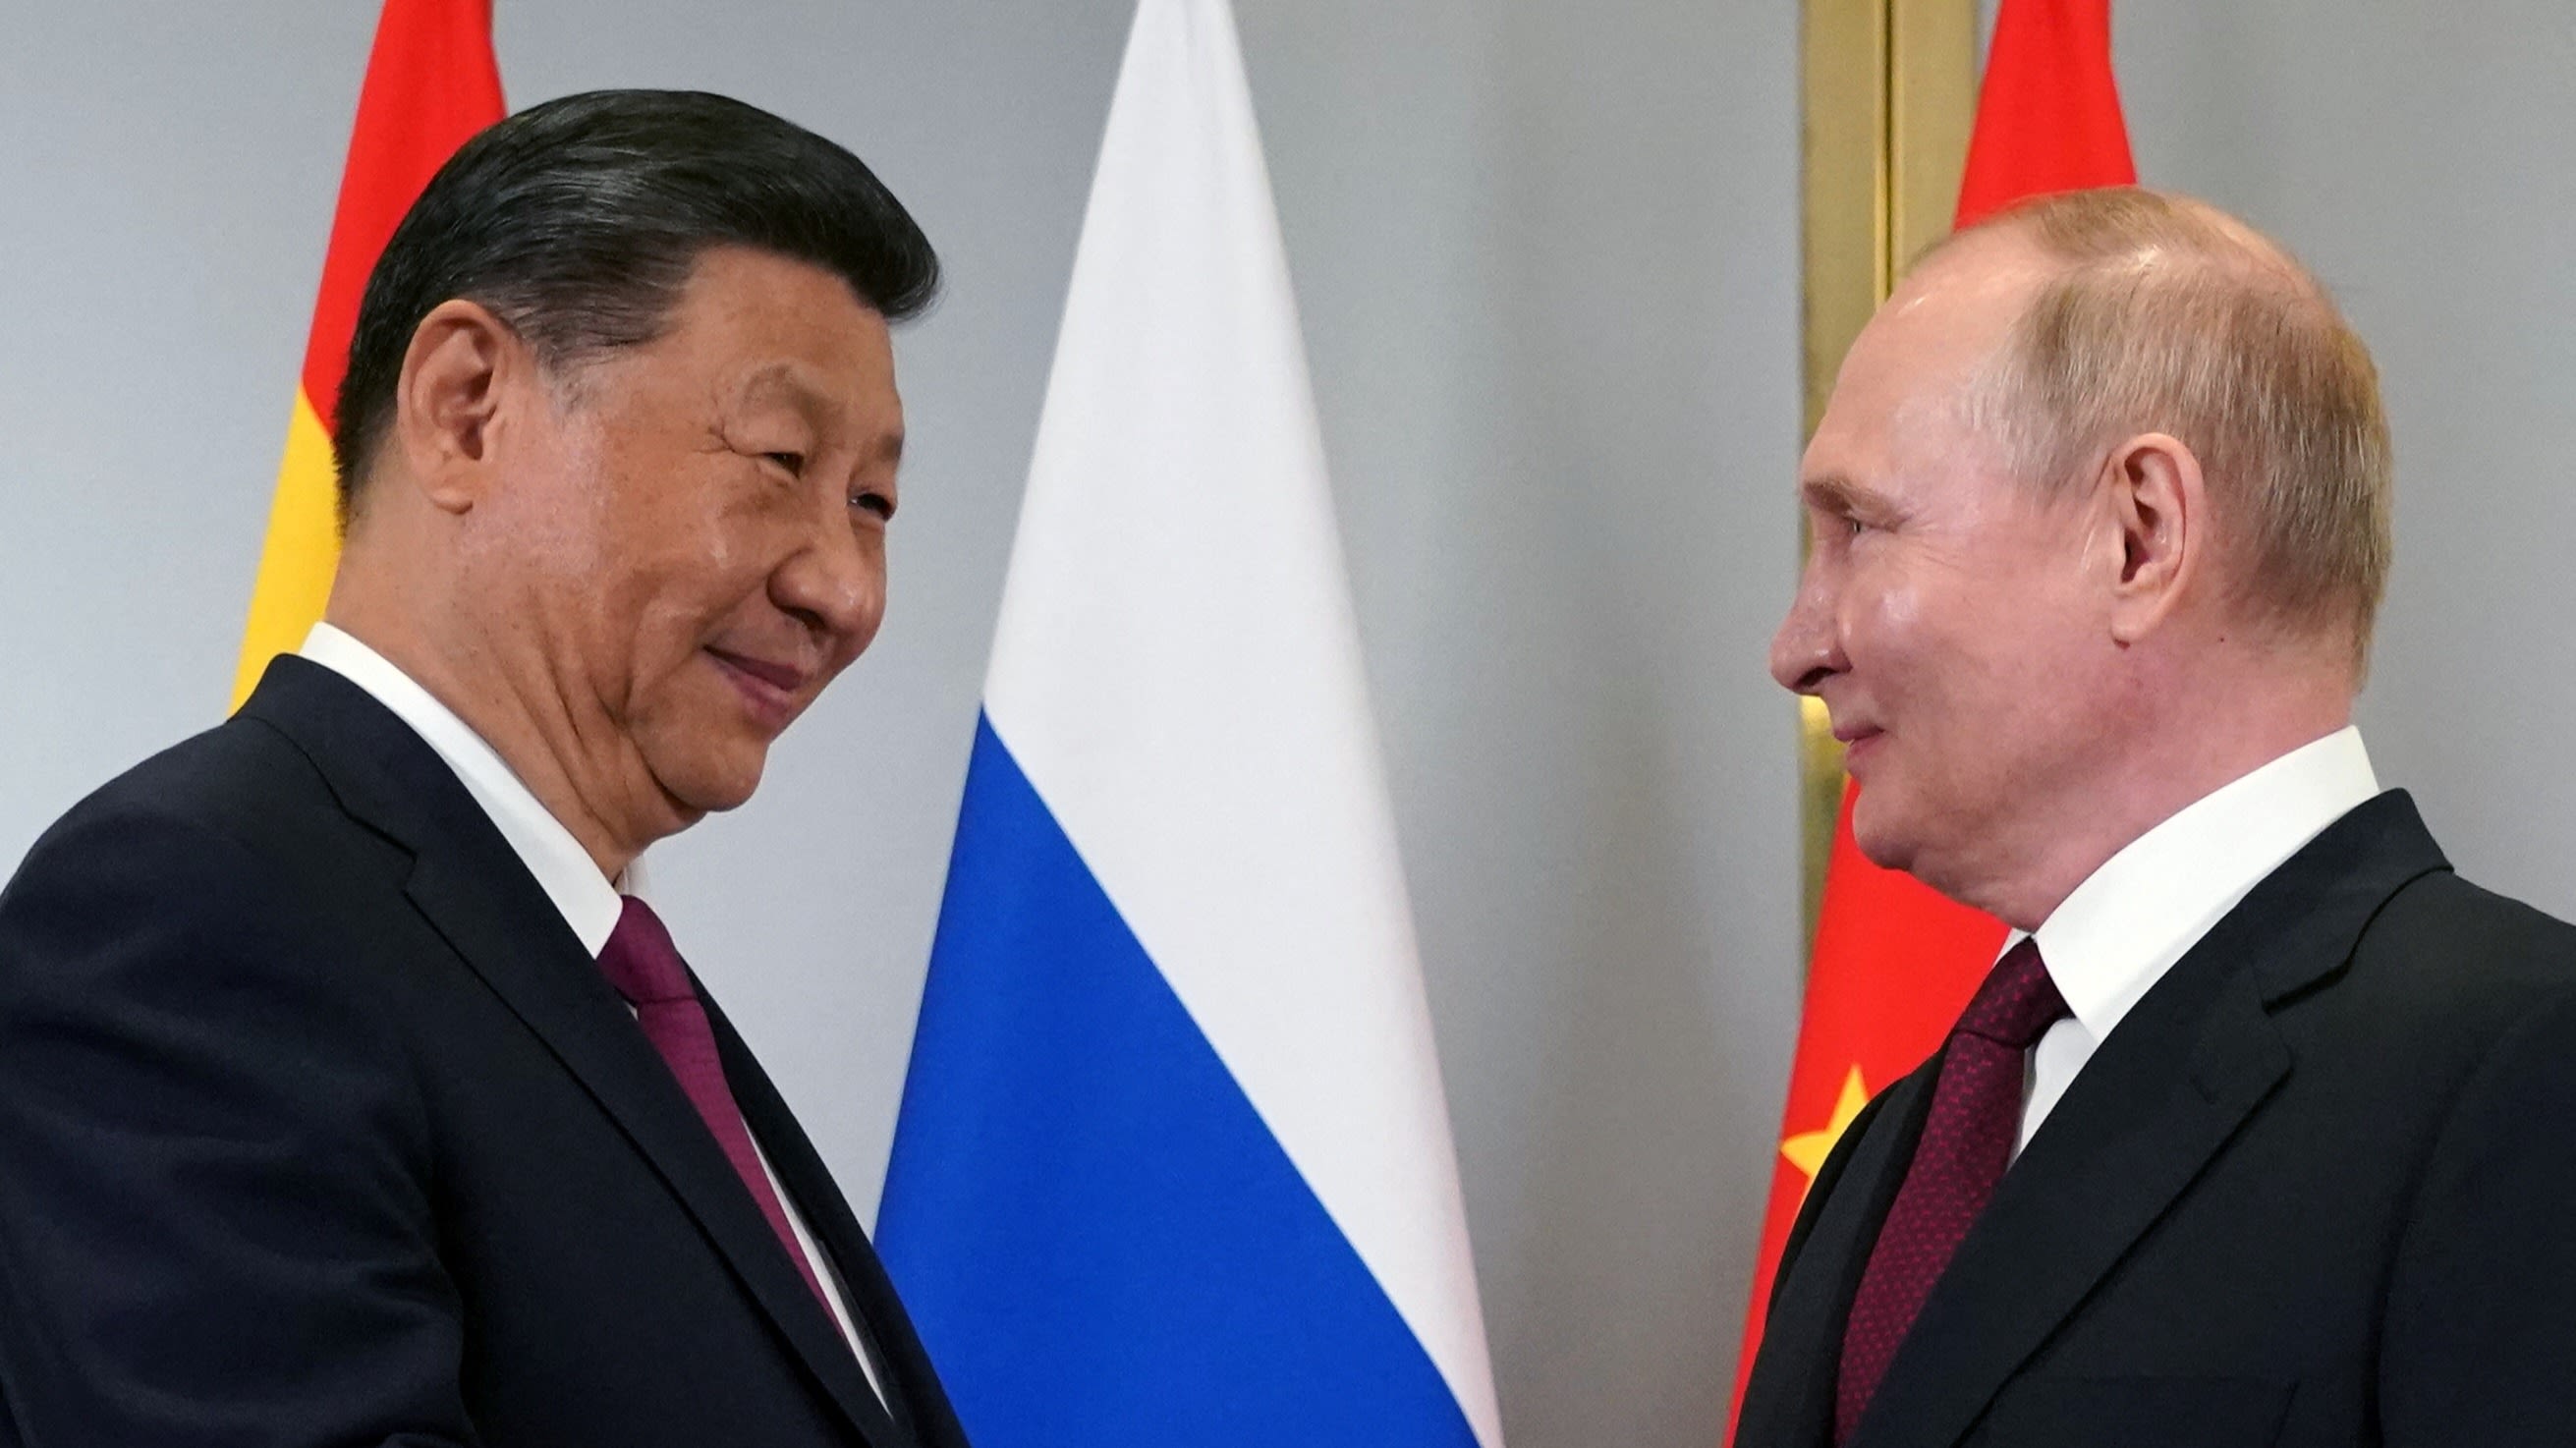 Xi Jinping meets Russia's Putin, backs Kazakhstan joining BRICS